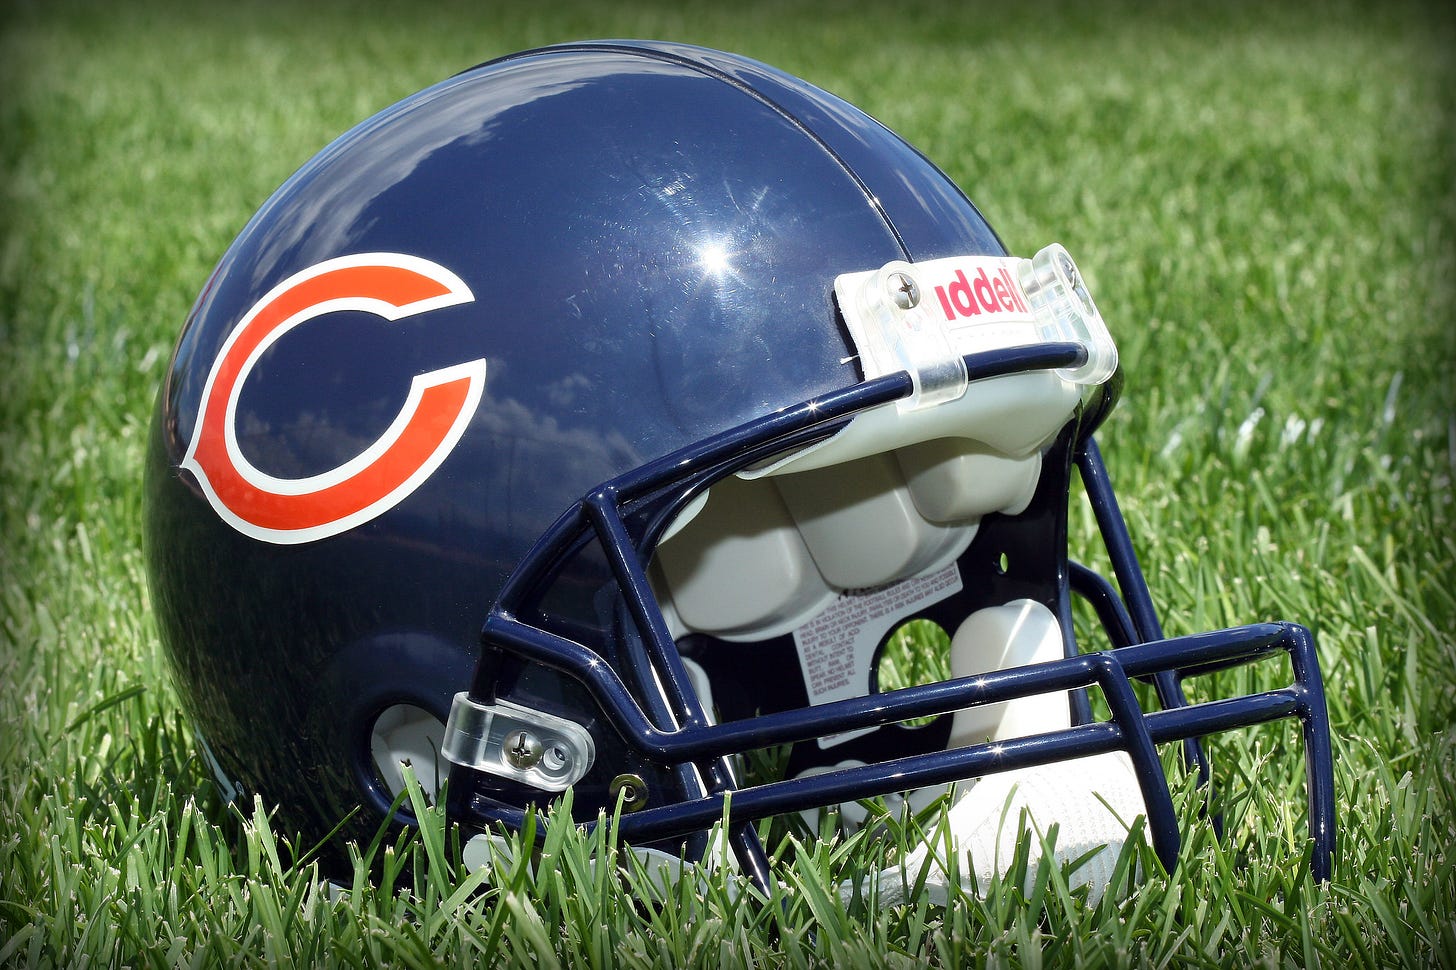 Chicago Bears helmet